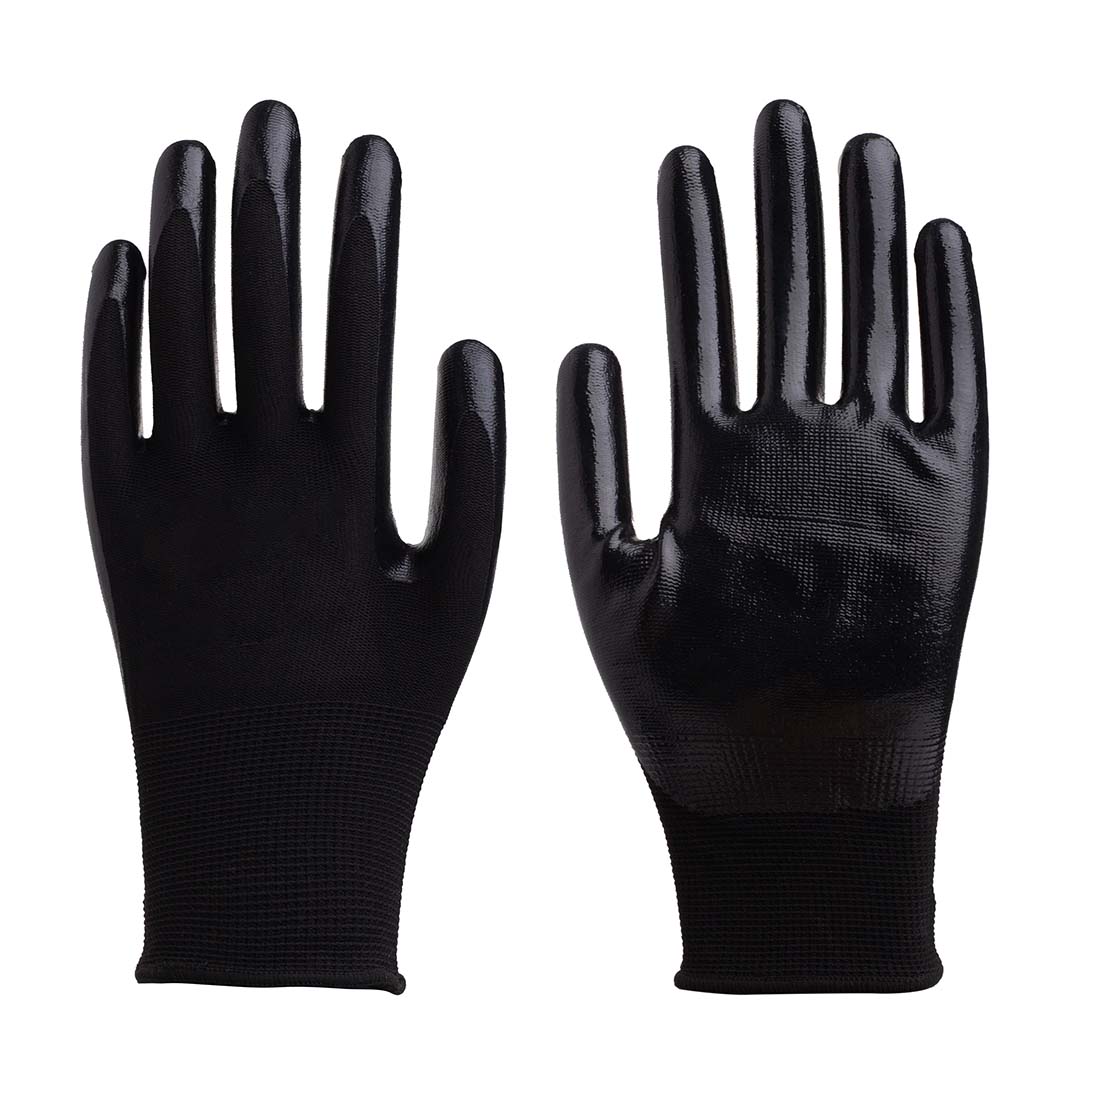 13G coated gloves | Nitrile coated gloves | Coated gloves